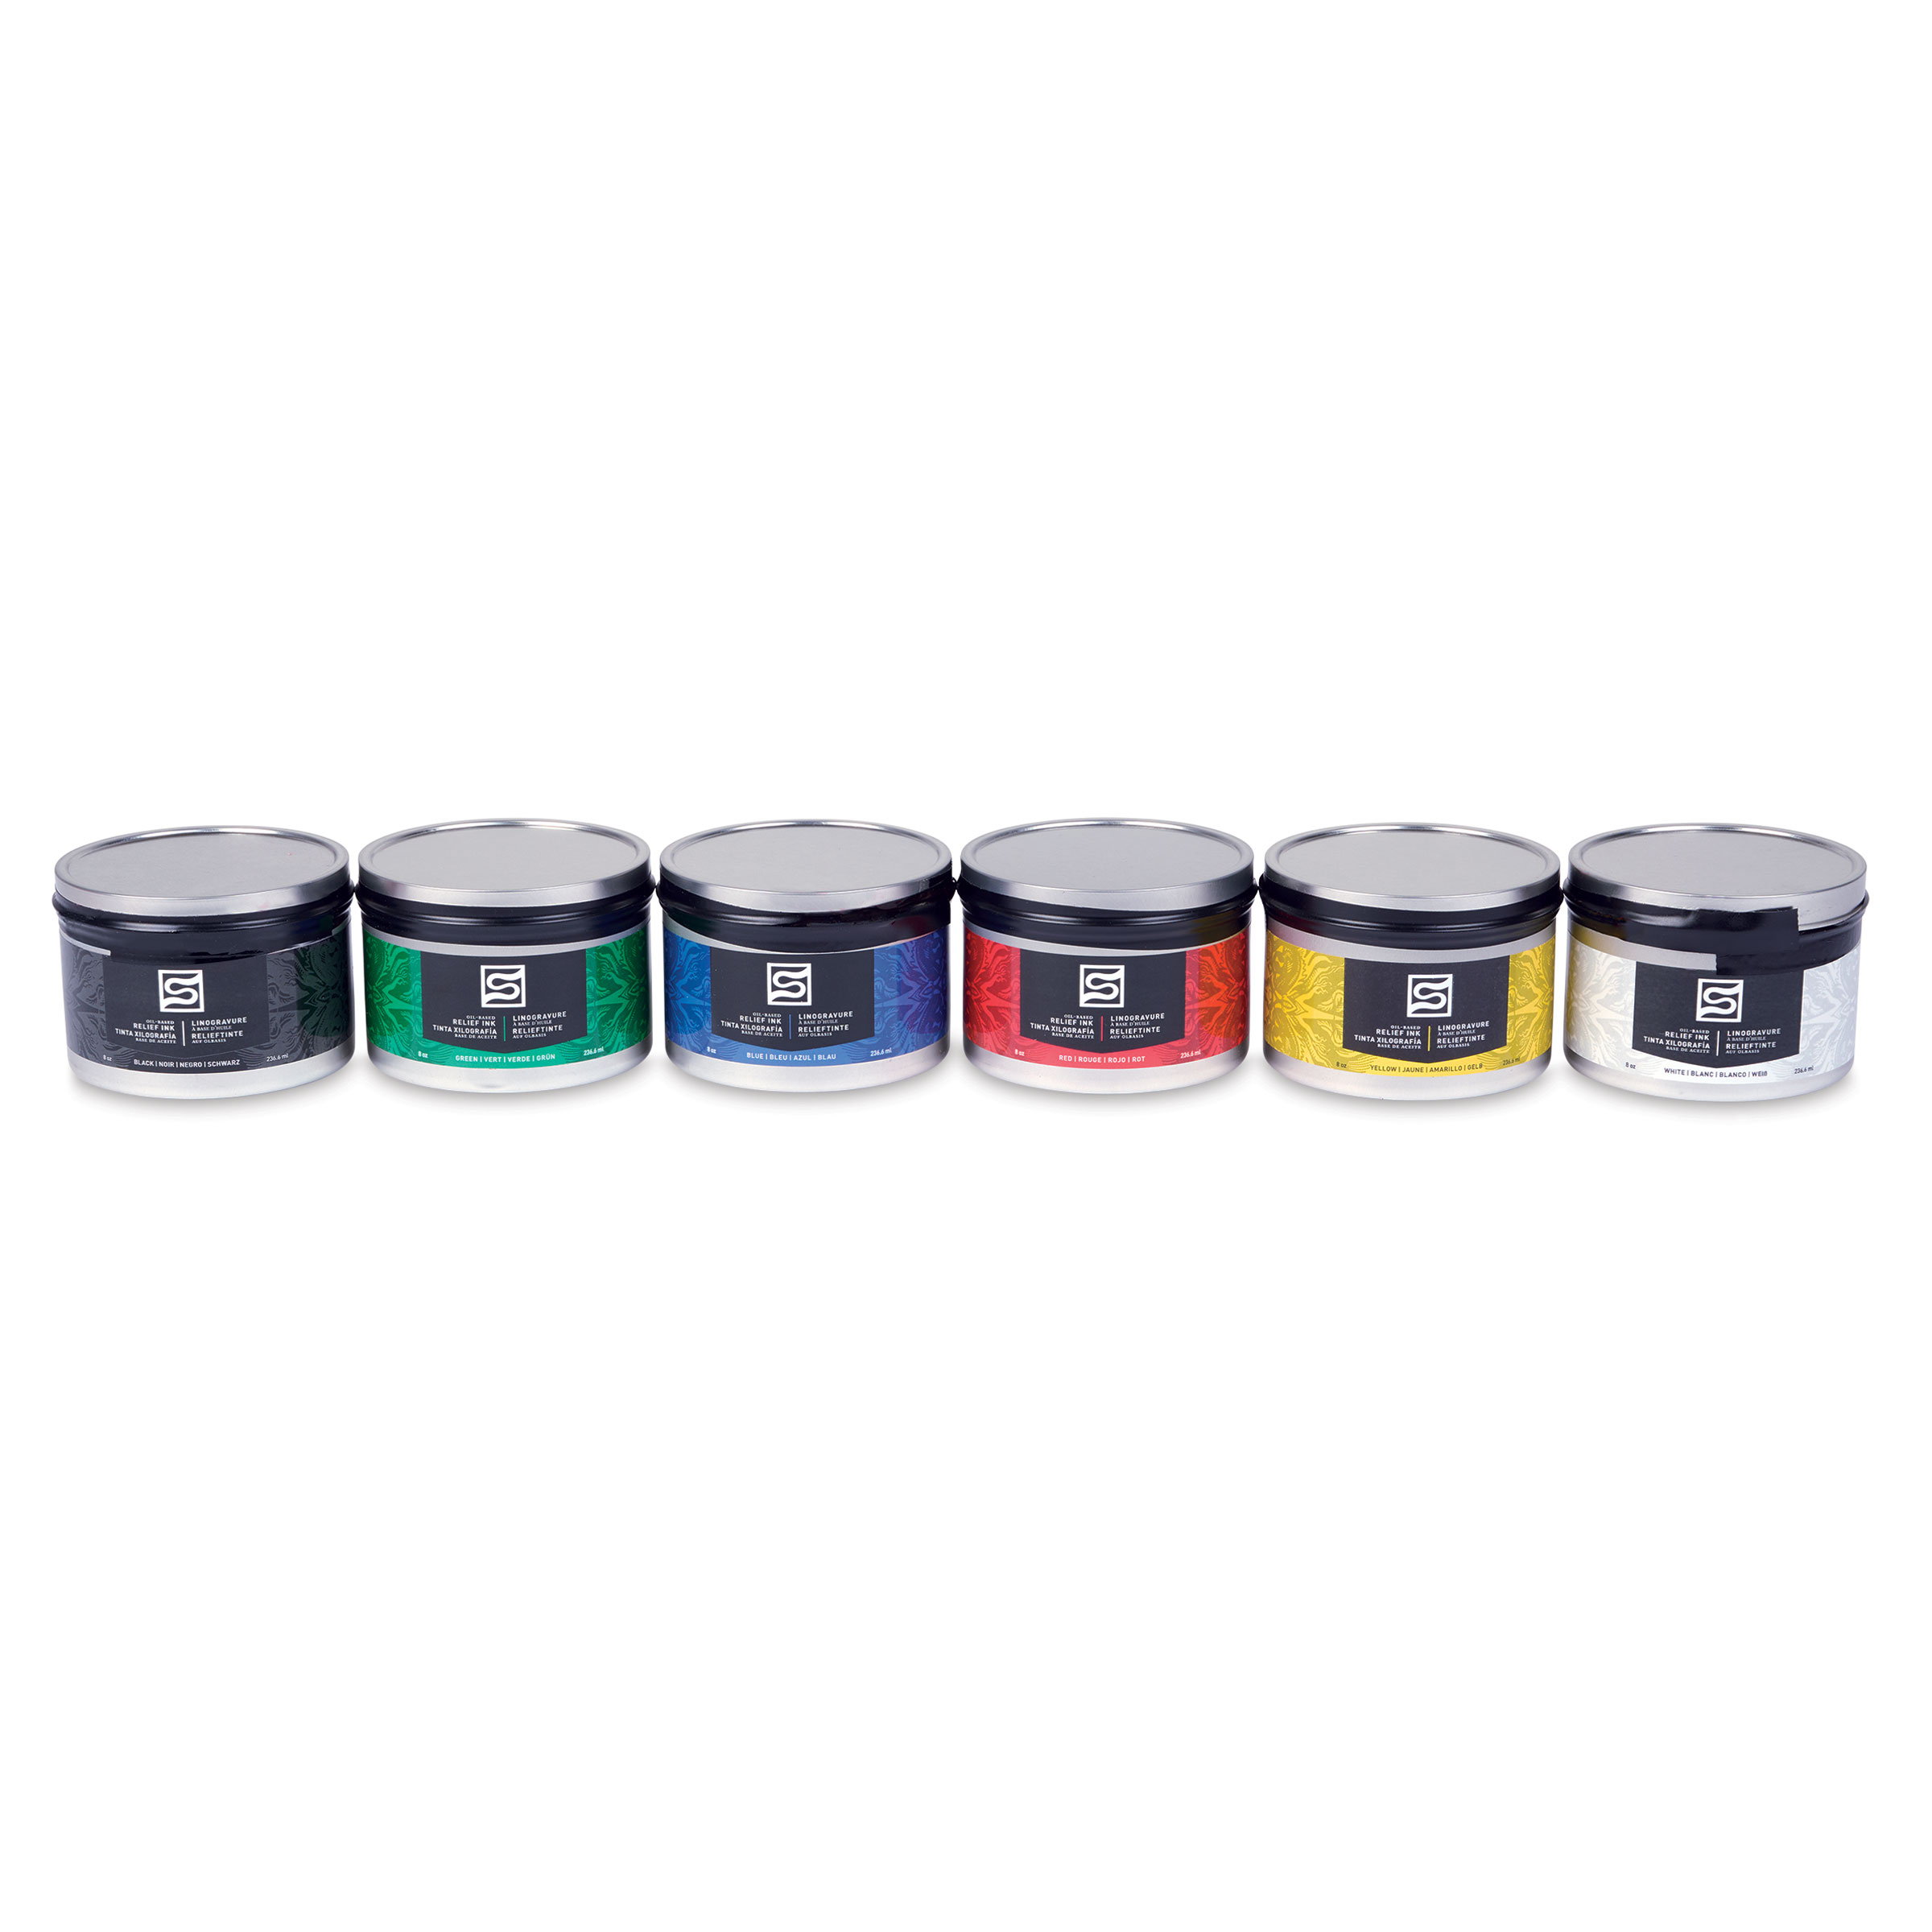 Oil-Based Block Printing Ink Starter Set - Meininger Art Supply